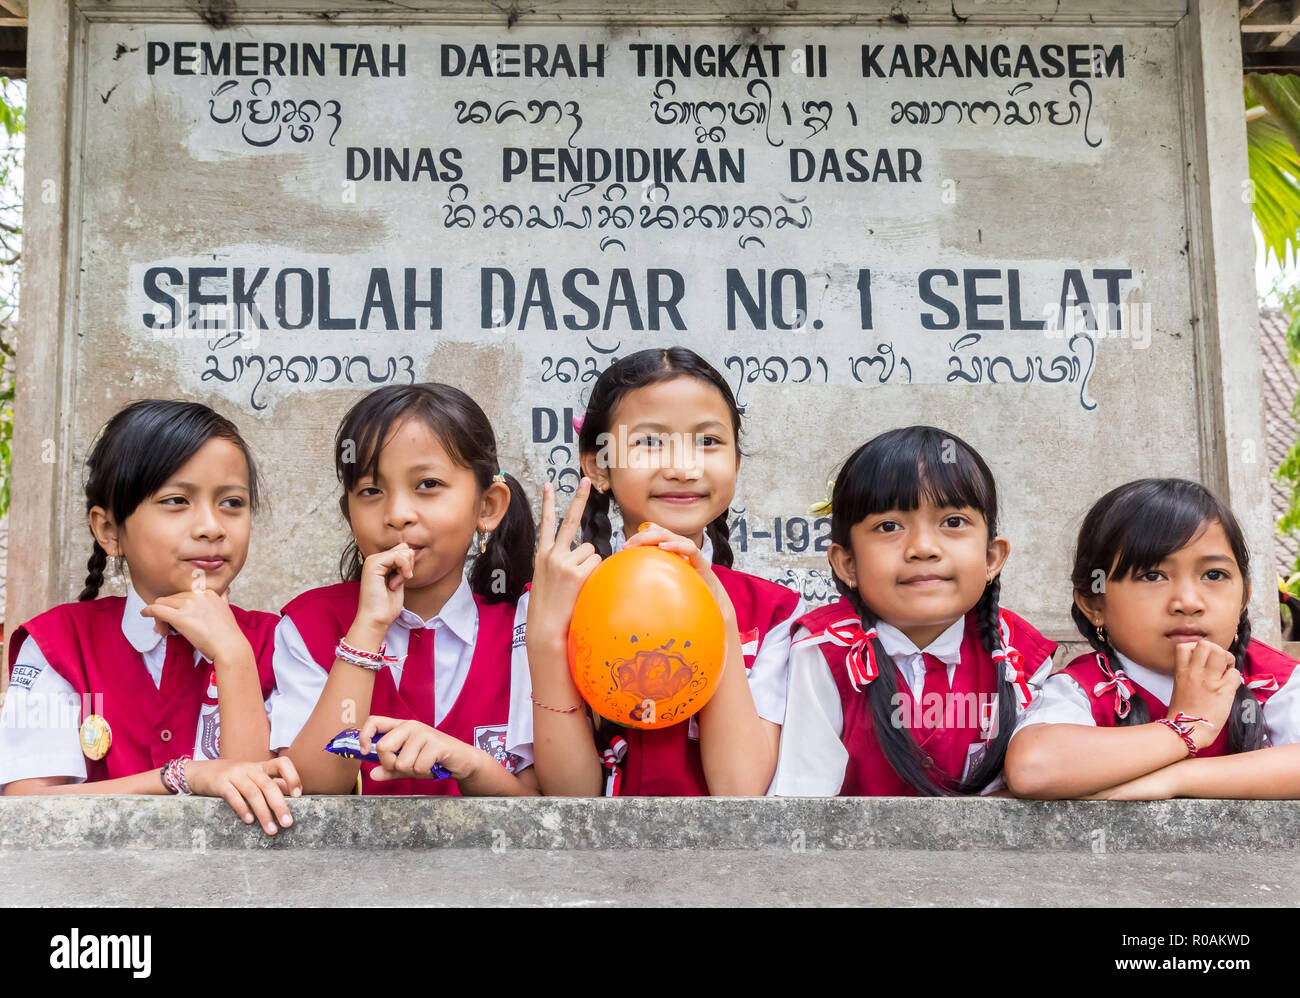 Indonesian schoolgirls in uniform posing in front of their school sign Stock Photo